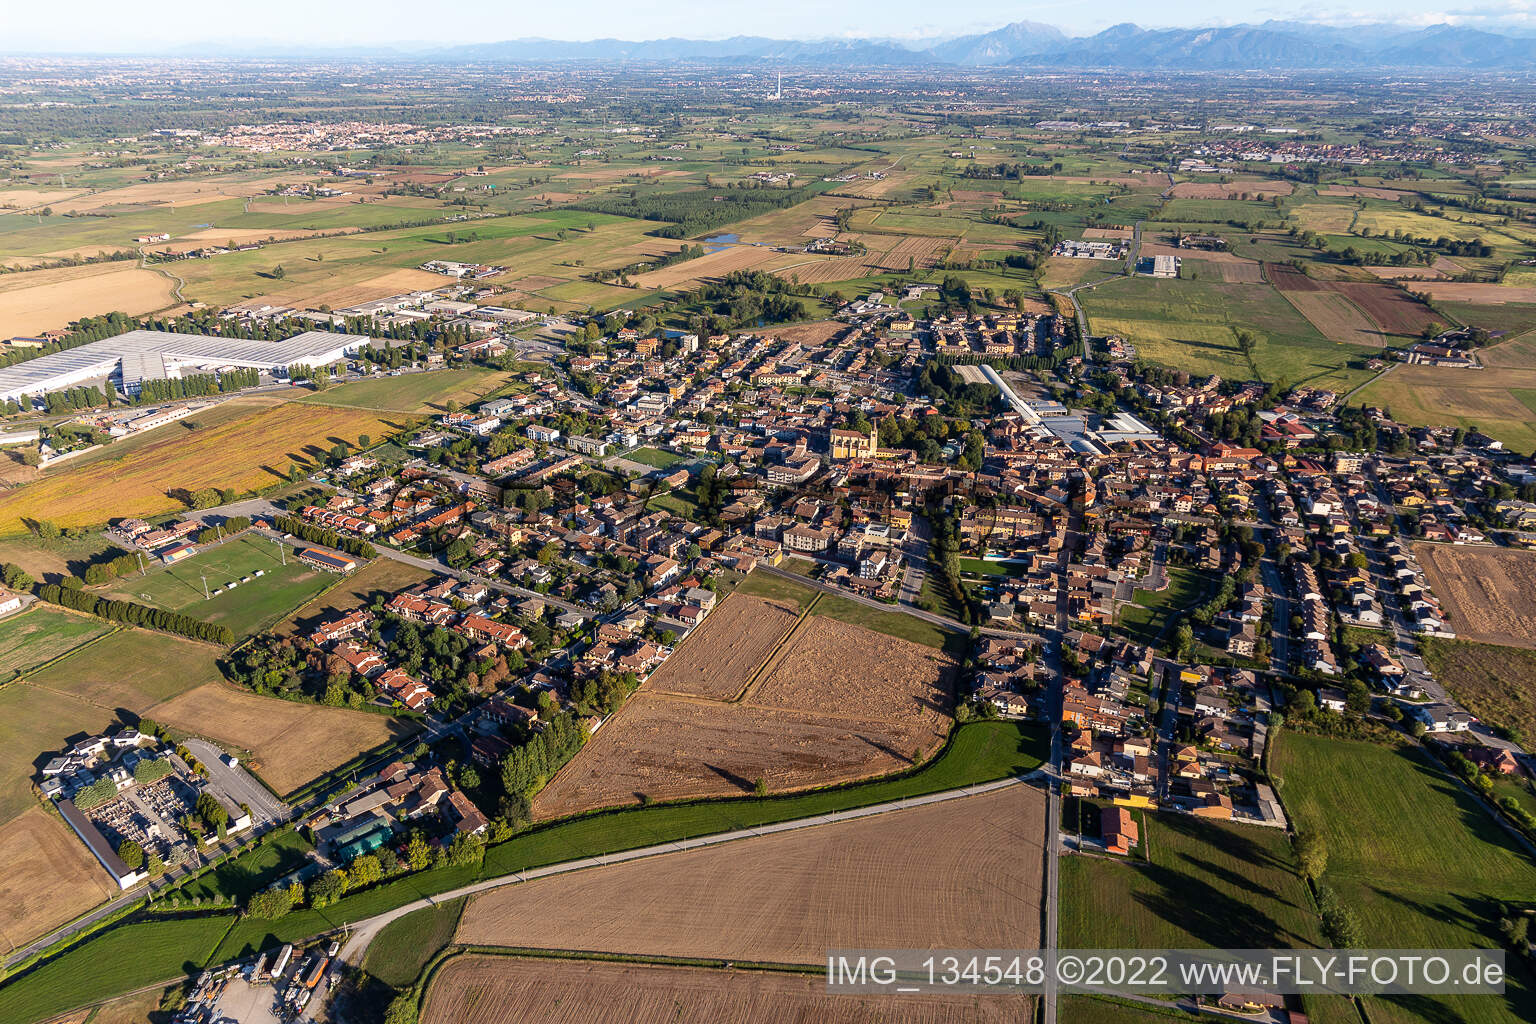 Vue aérienne de Agnadello dans le département Cremona, Italie